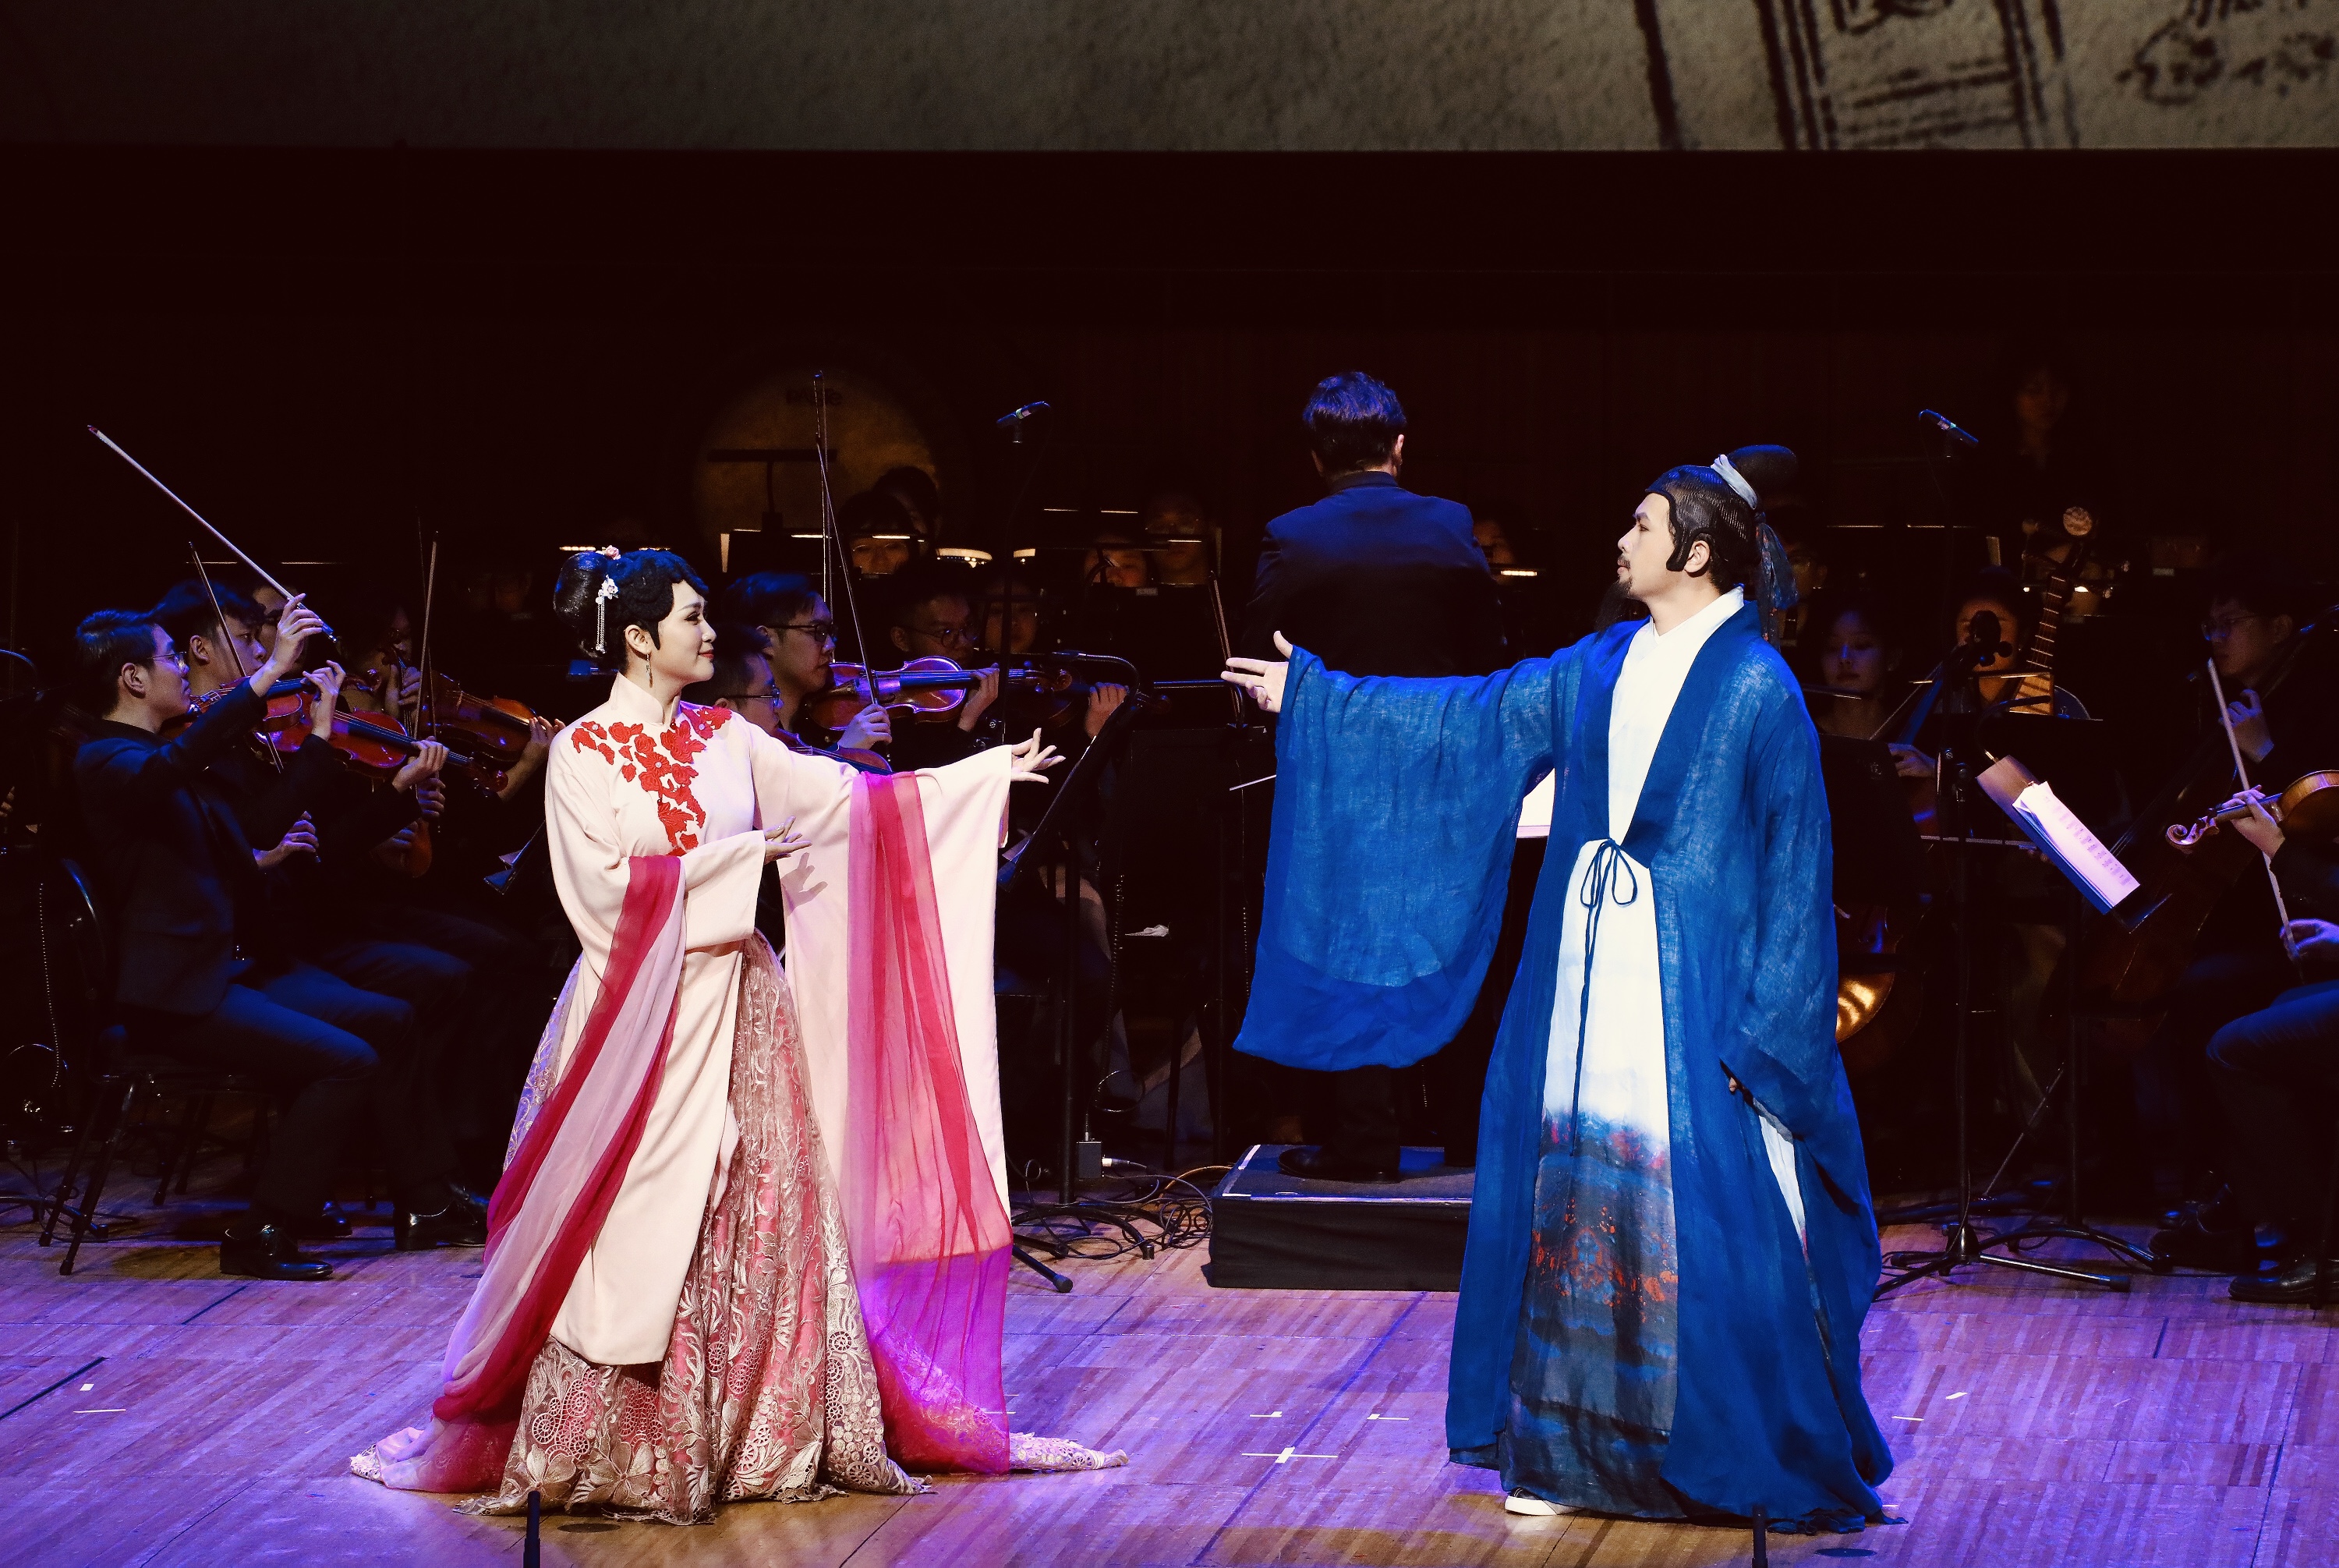 WeChat Image 20190408142833 中国戏剧泰斗同名歌剧《汤显祖》歌剧音乐会唱响悉尼歌剧院“东方莎士比亚” 走近西方观众